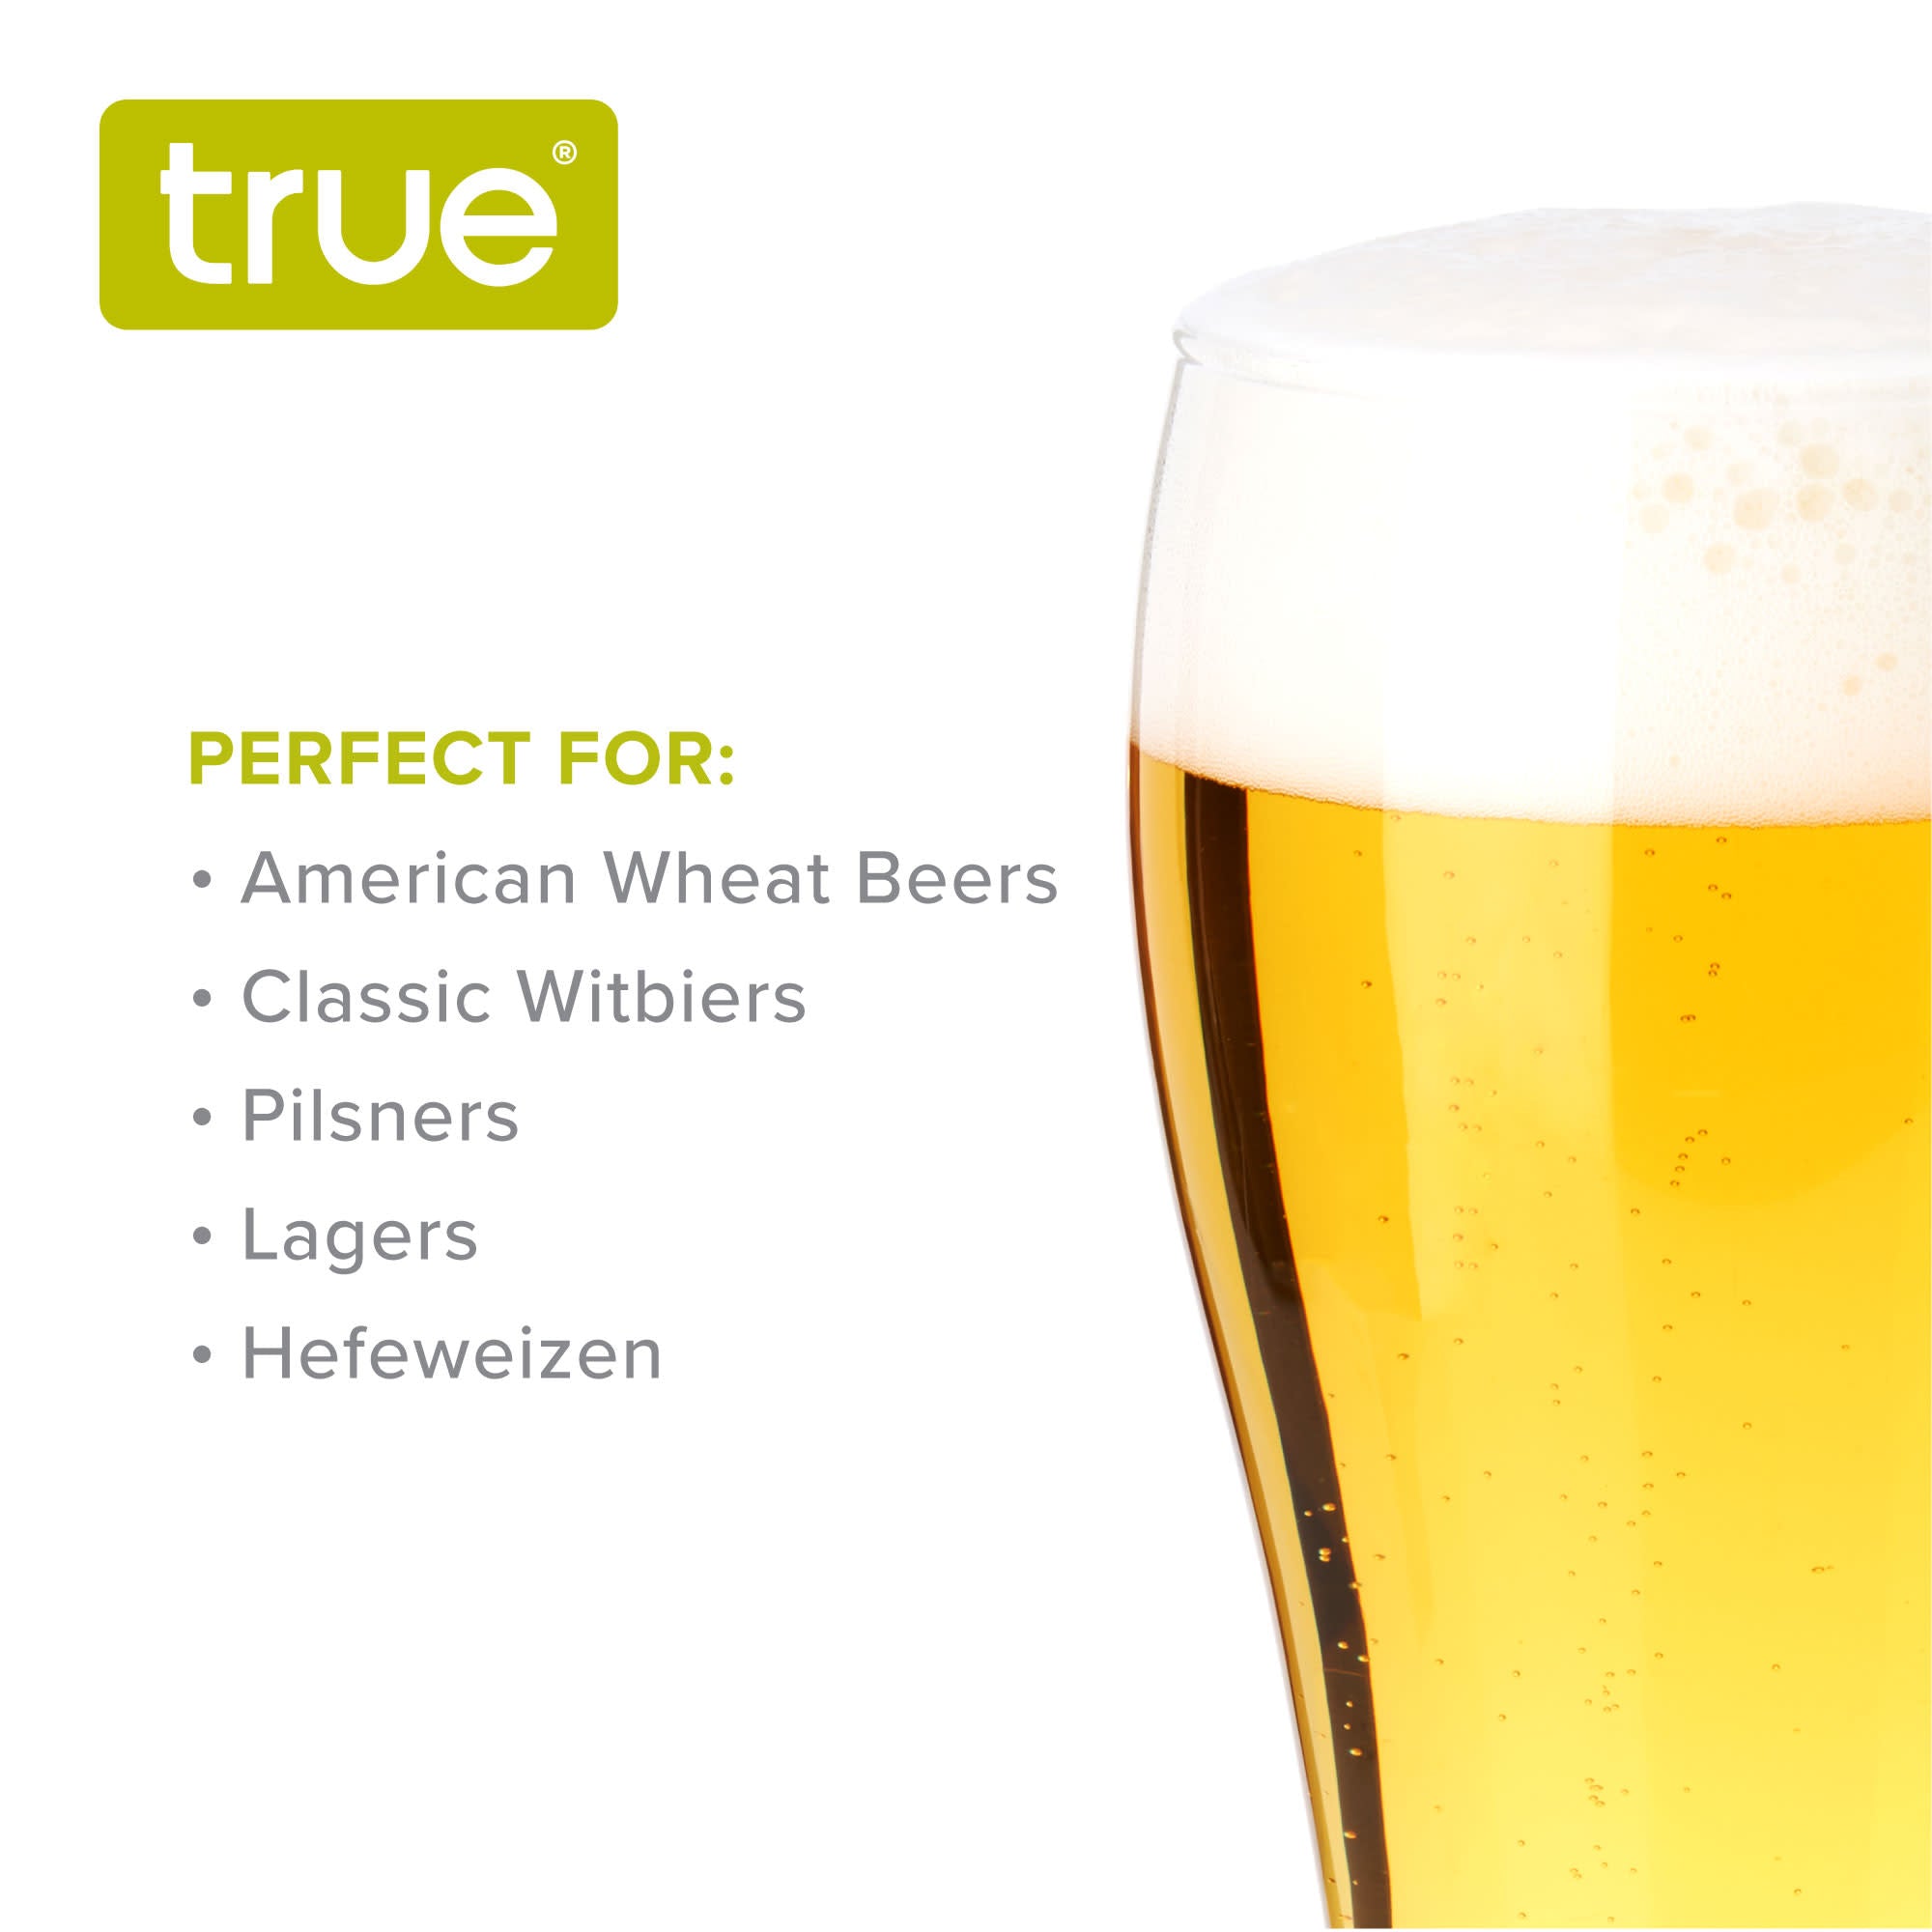 Wheat Beer Glasses, Set of 4 by True (9954) Drinkware True 